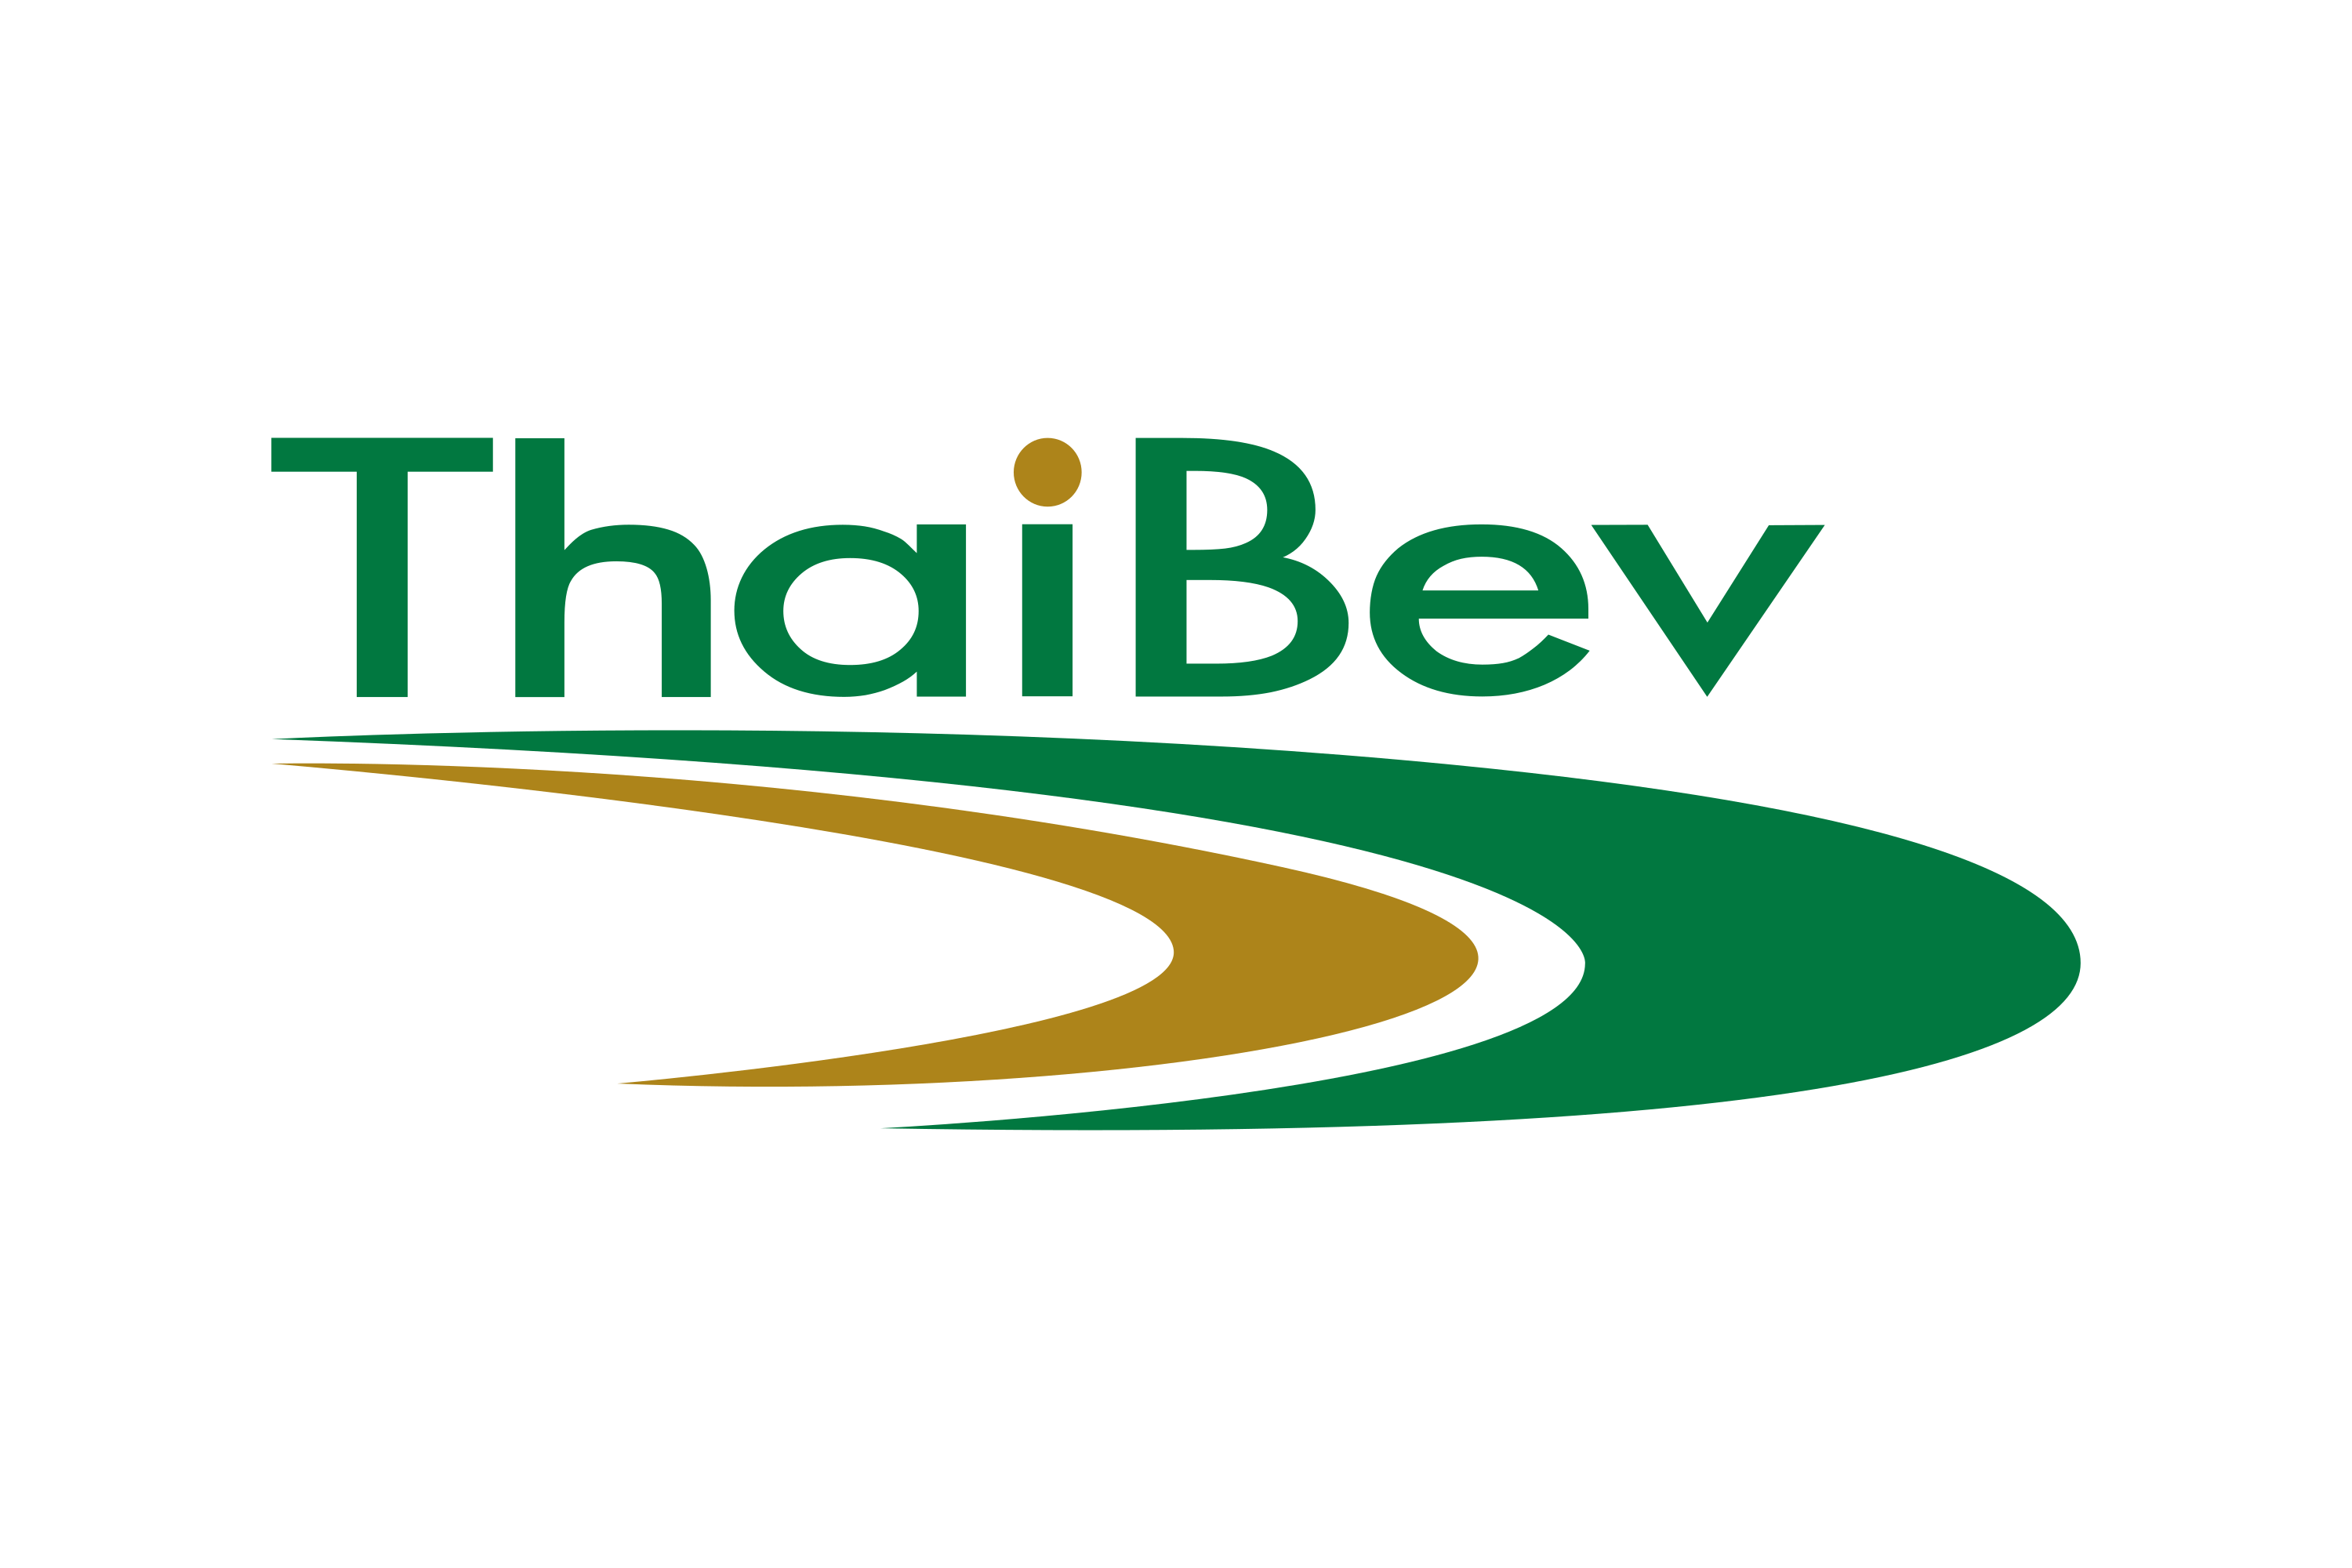 ThaiBev Logo